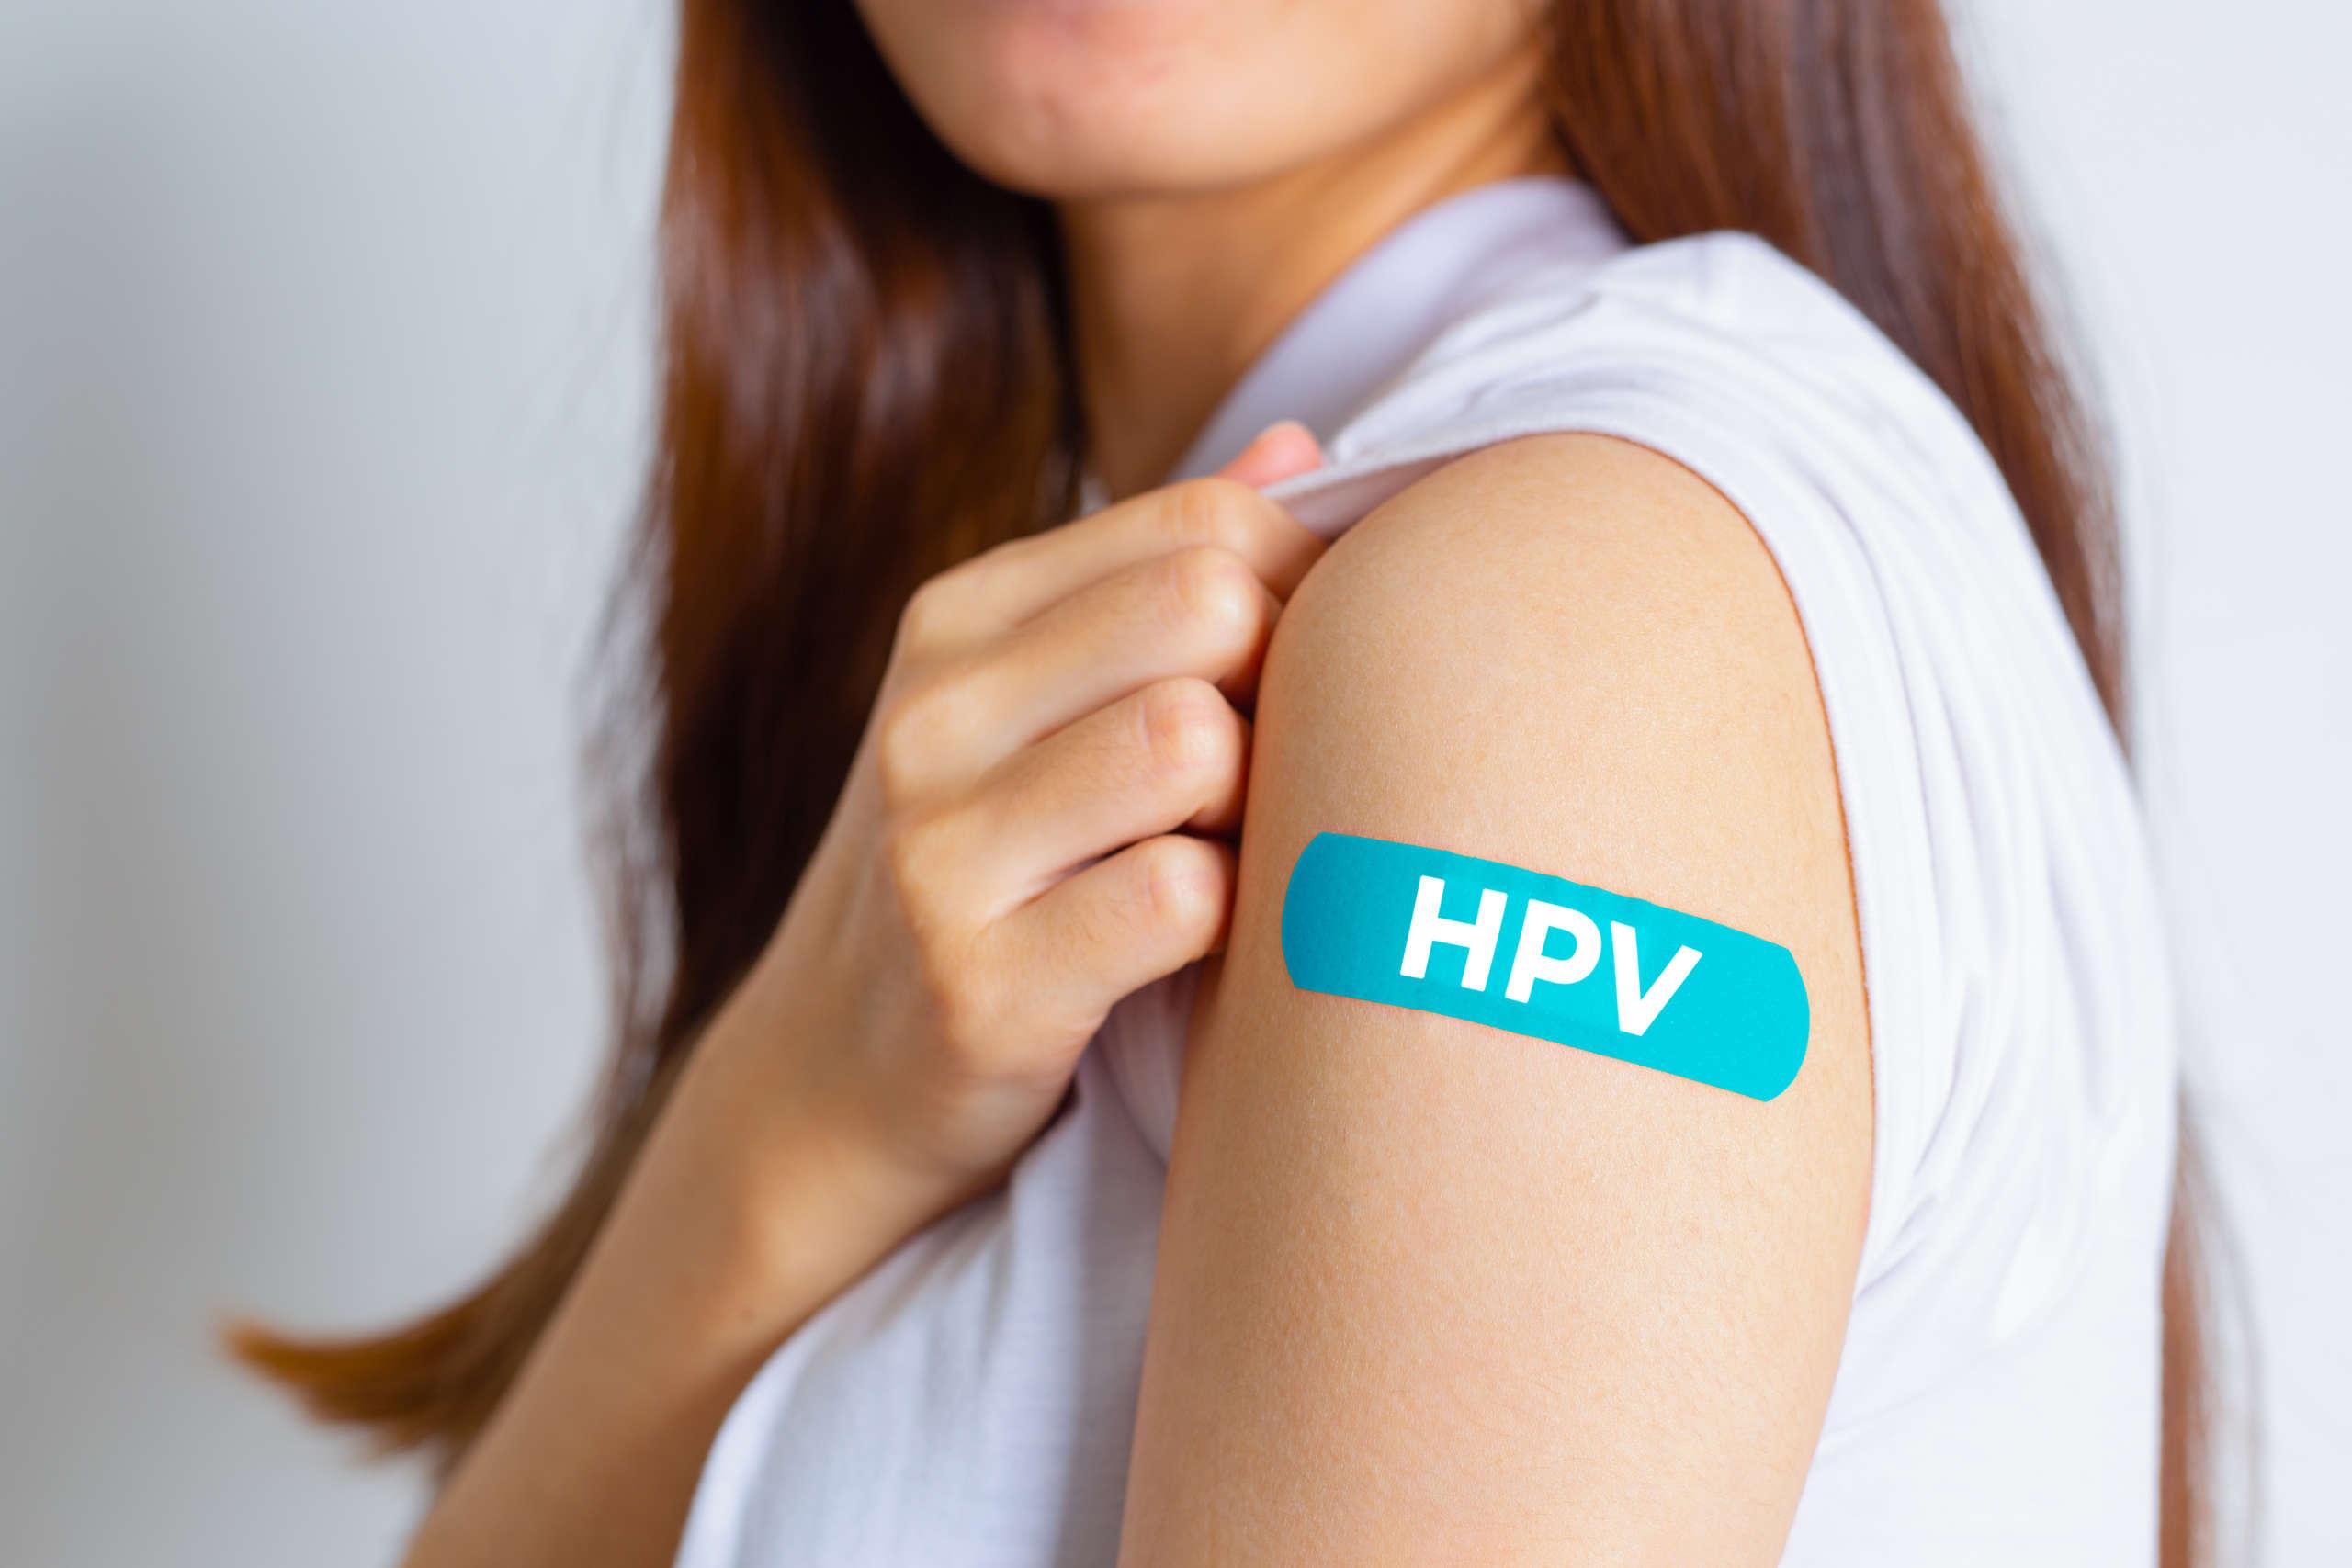 HPV (Humanes Papillomavirus) Teenager-Frau, die einen blauen Verband zeigt, nachdem sie den HPV-Impfstoff erhalten hat. Viren Einige Stämme infizieren Genitalien und können Gebärmutterhalskrebs verursachen. Frauengesundheitskonzept.